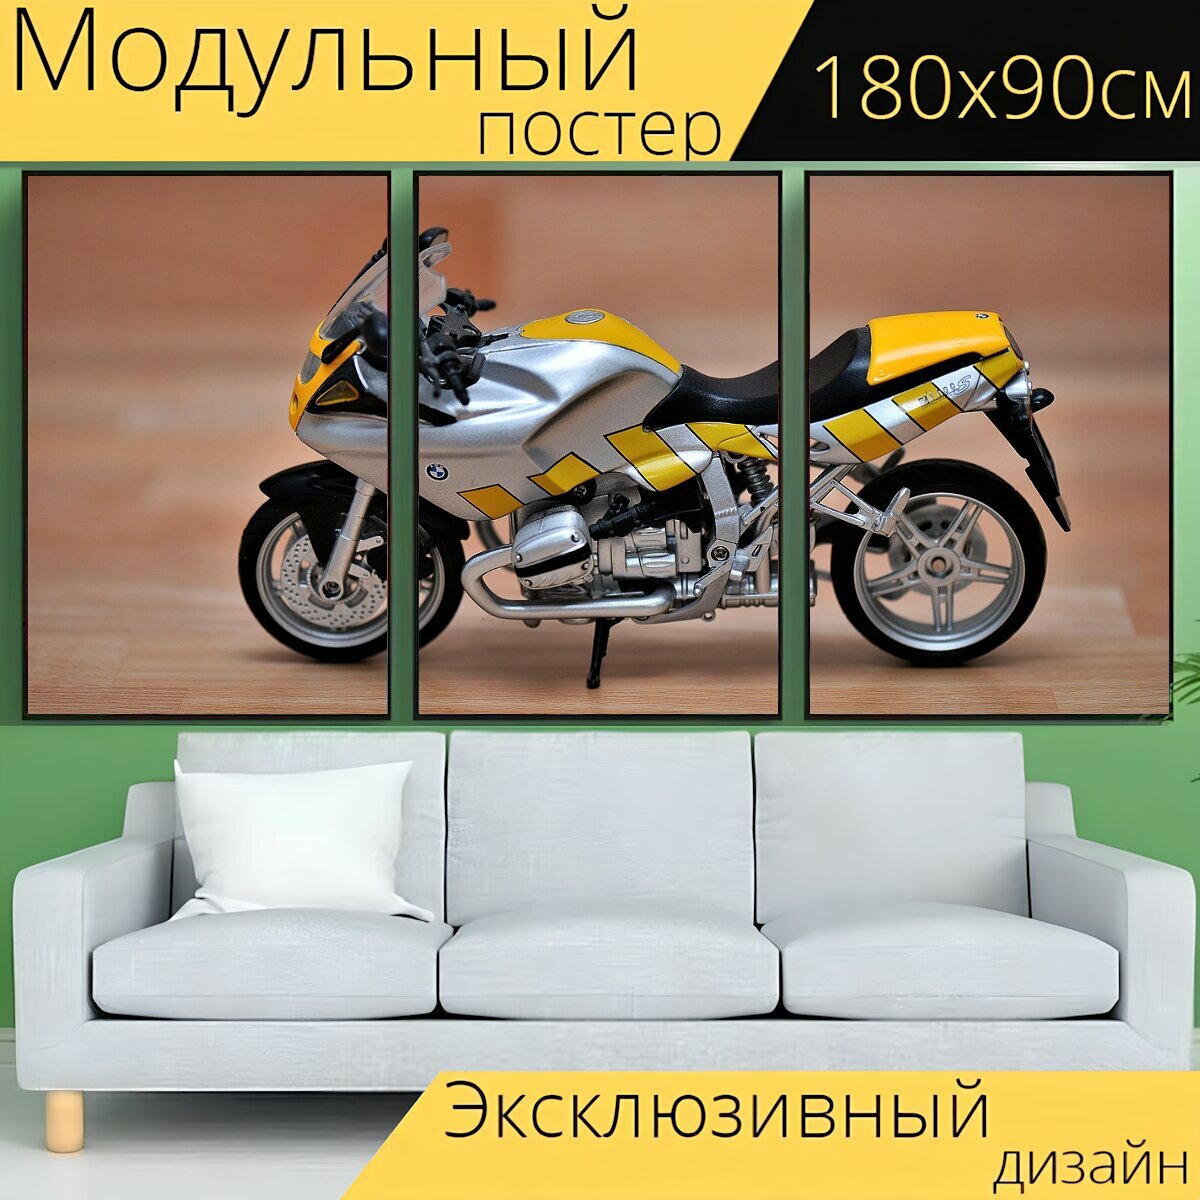 Модульный постер "Мотоцикл, модель, моделирование" 180 x 90 см. для интерьера